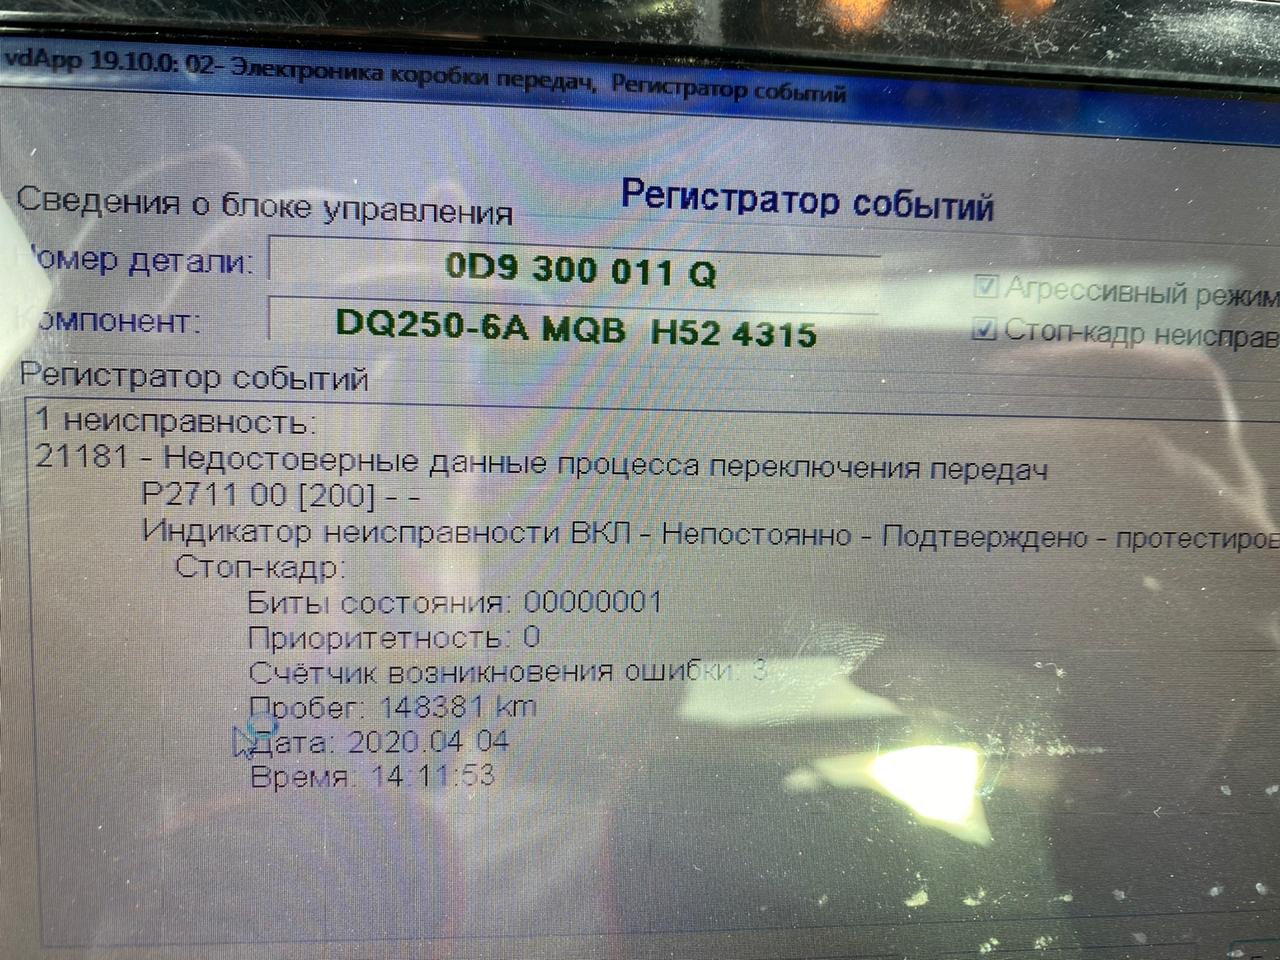 0D9_PUP Novozhilov 12042020